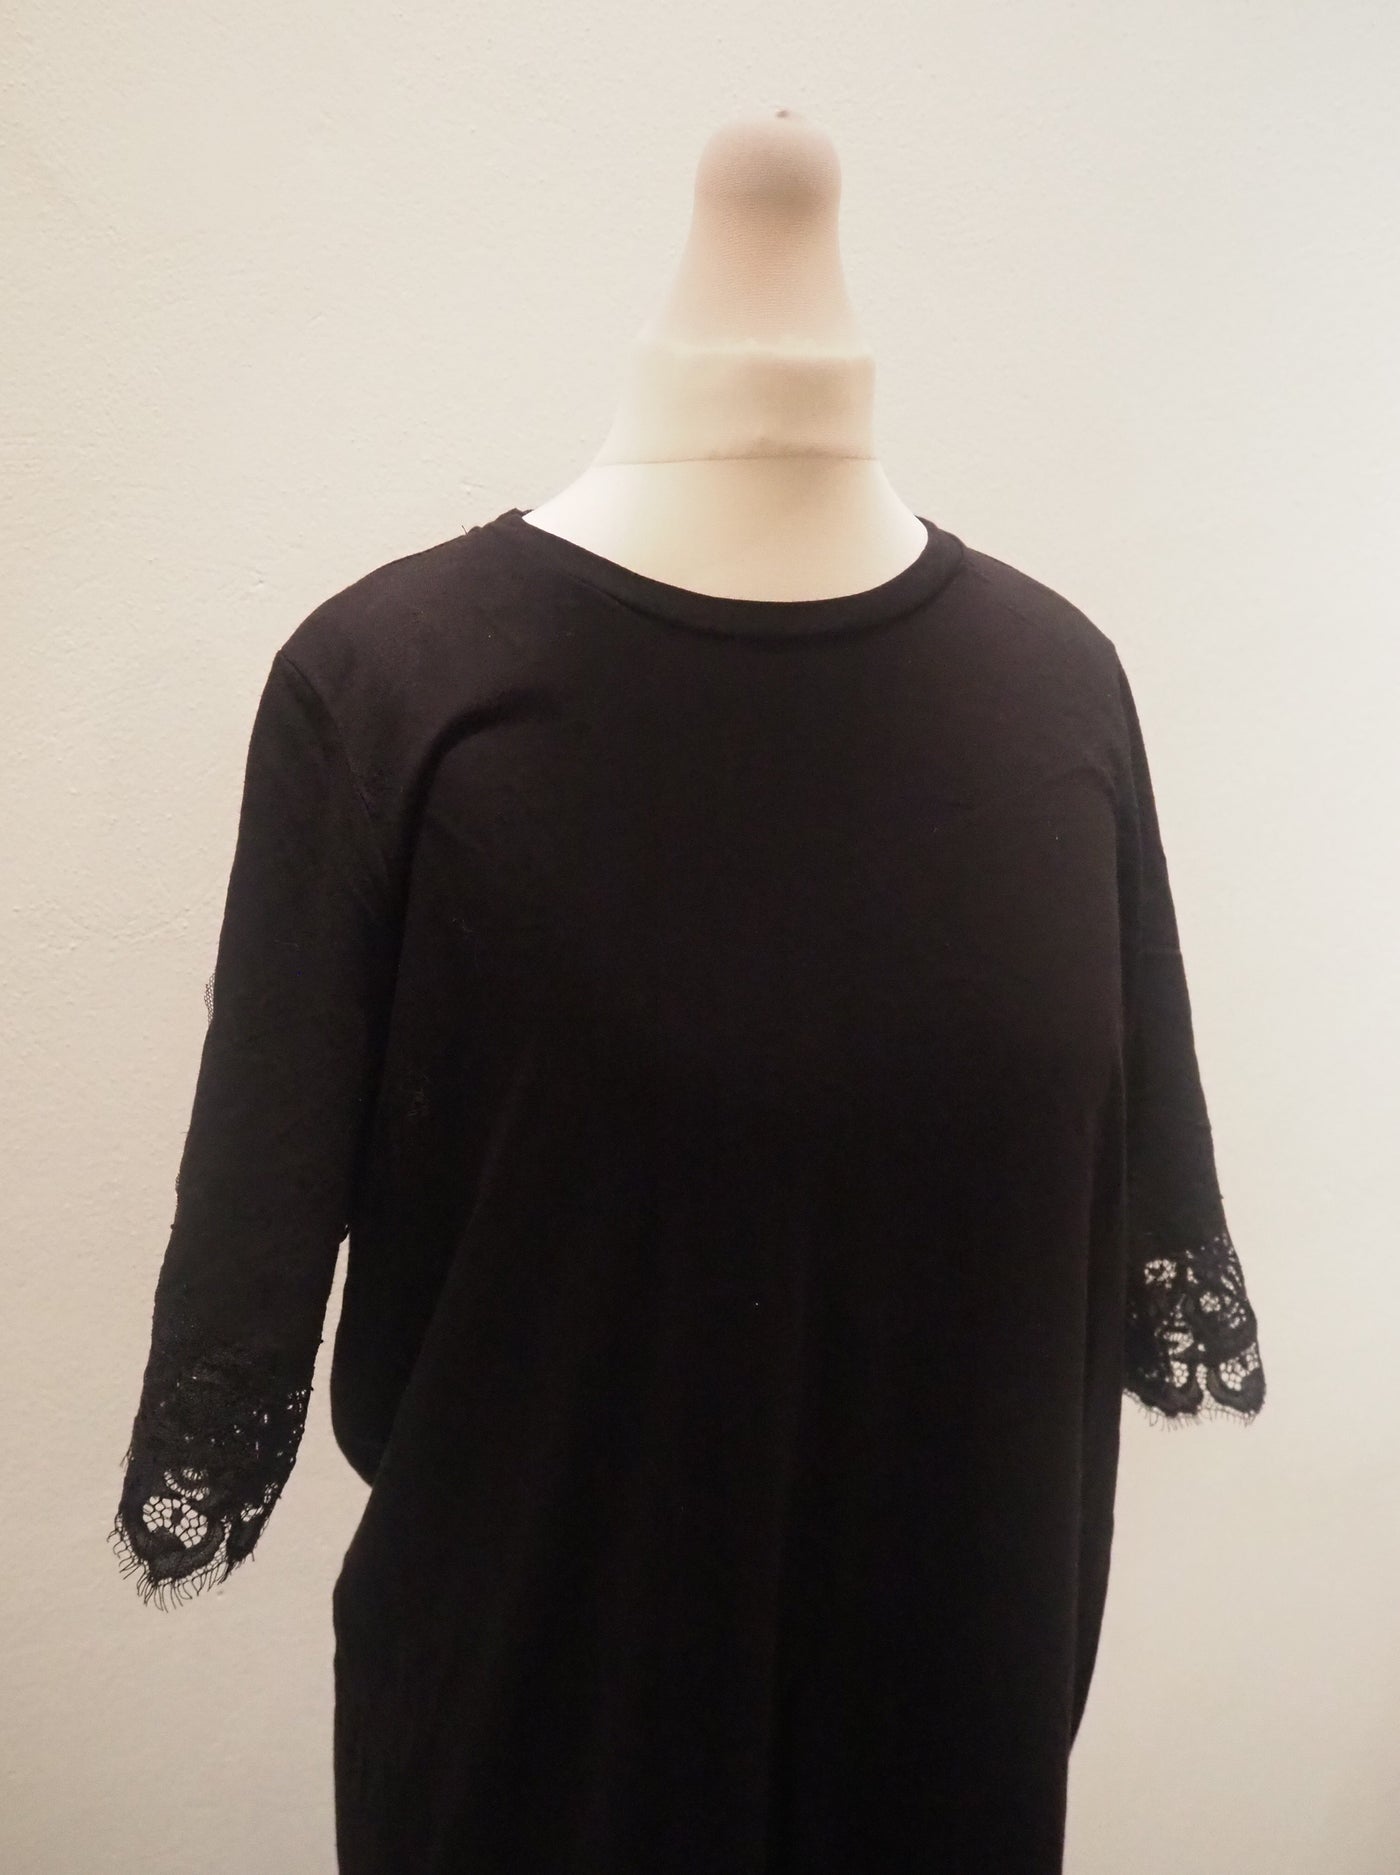 Topshop Maternity Black Lace Trim Dress 12